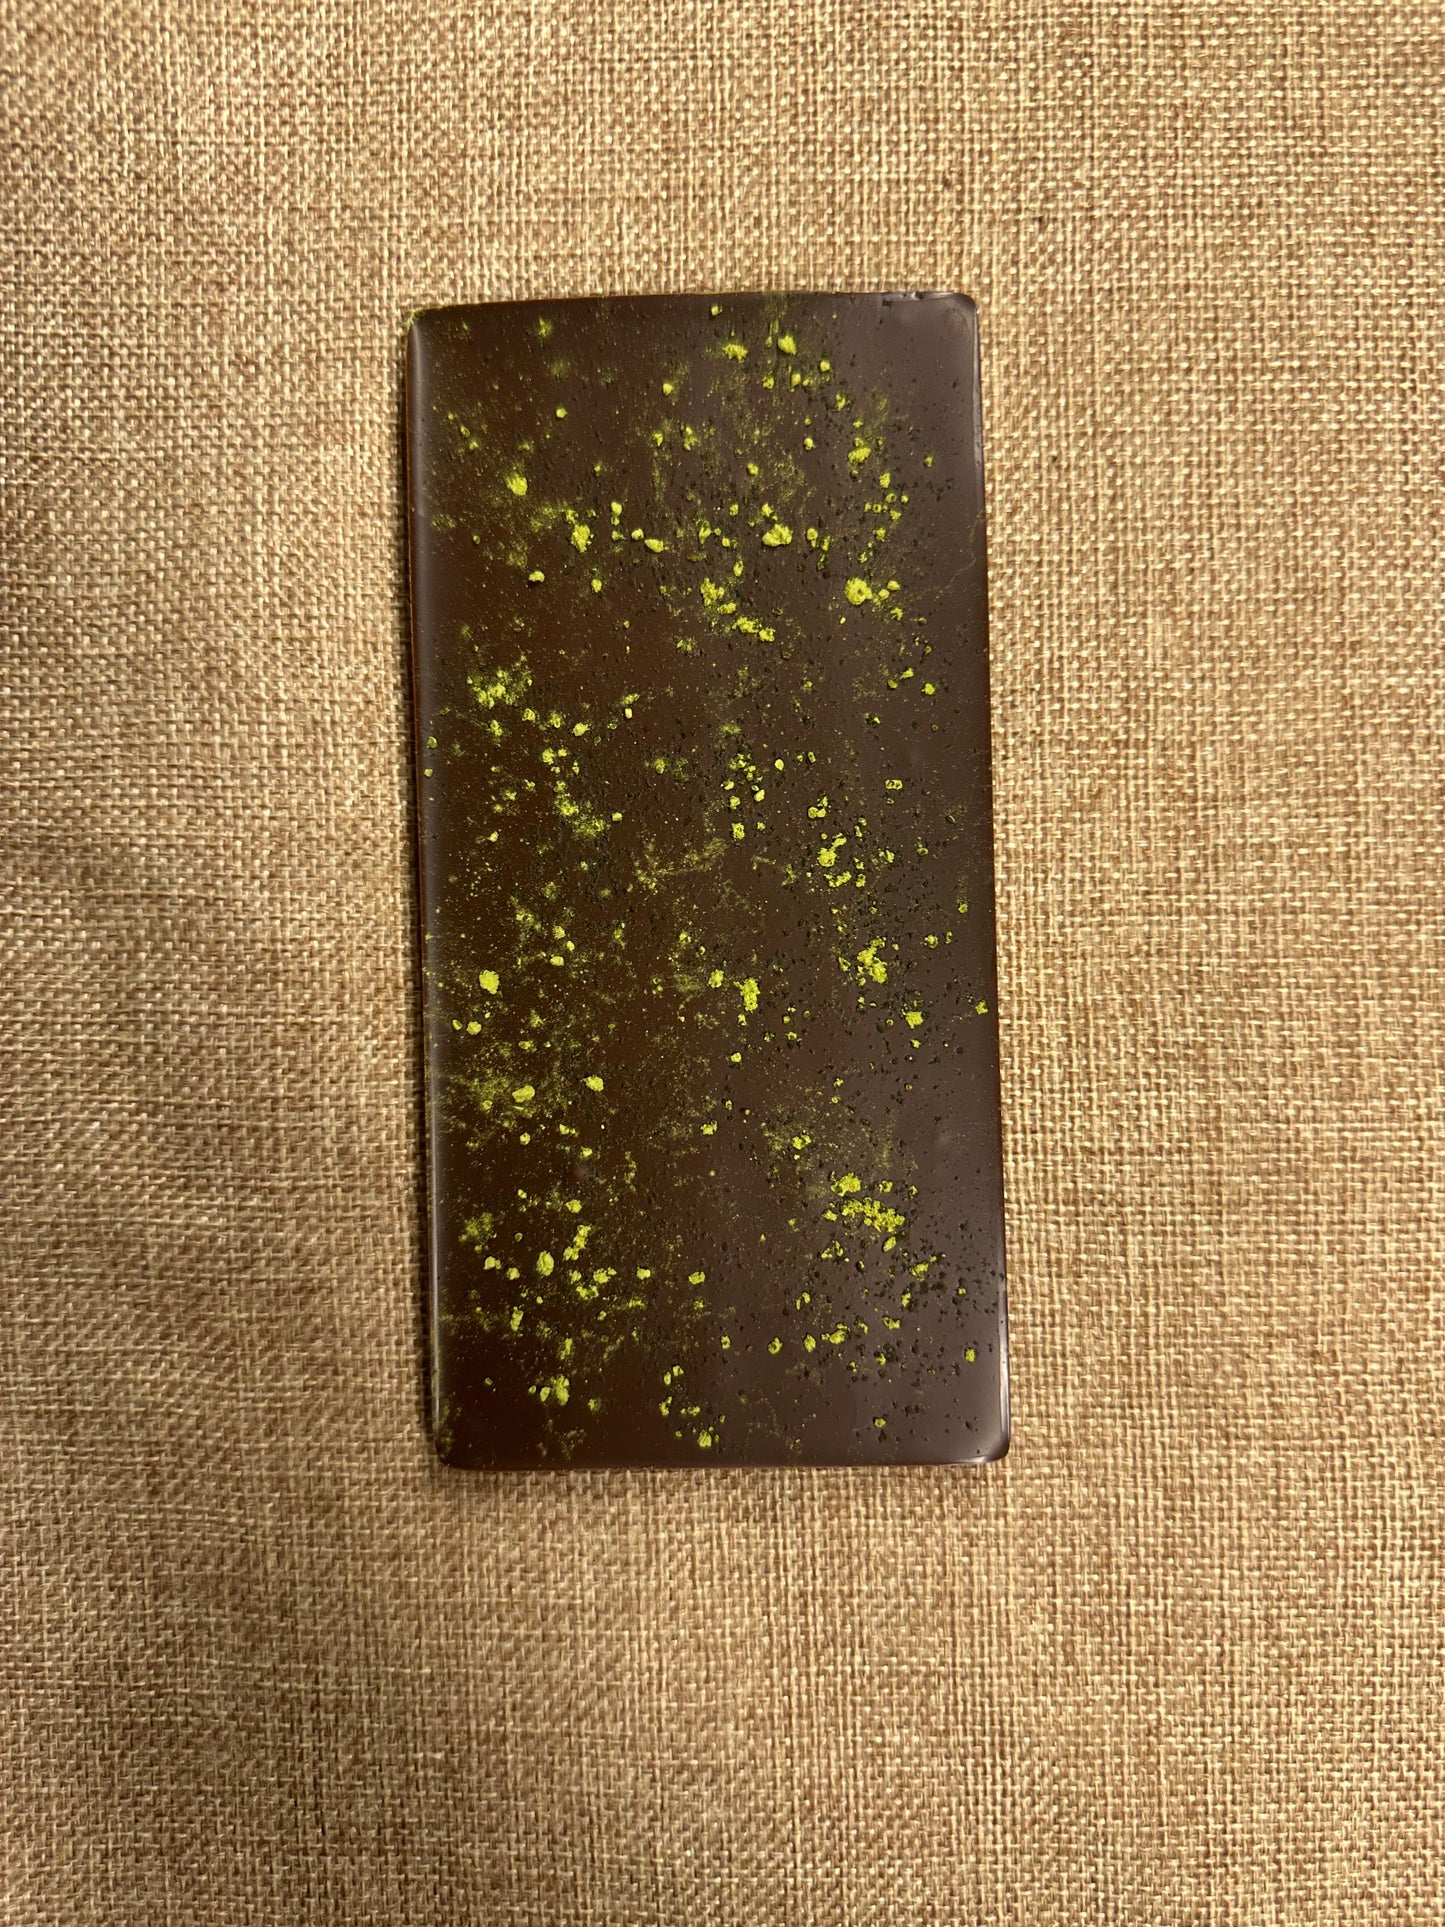 Dark Chocolate with Matcha